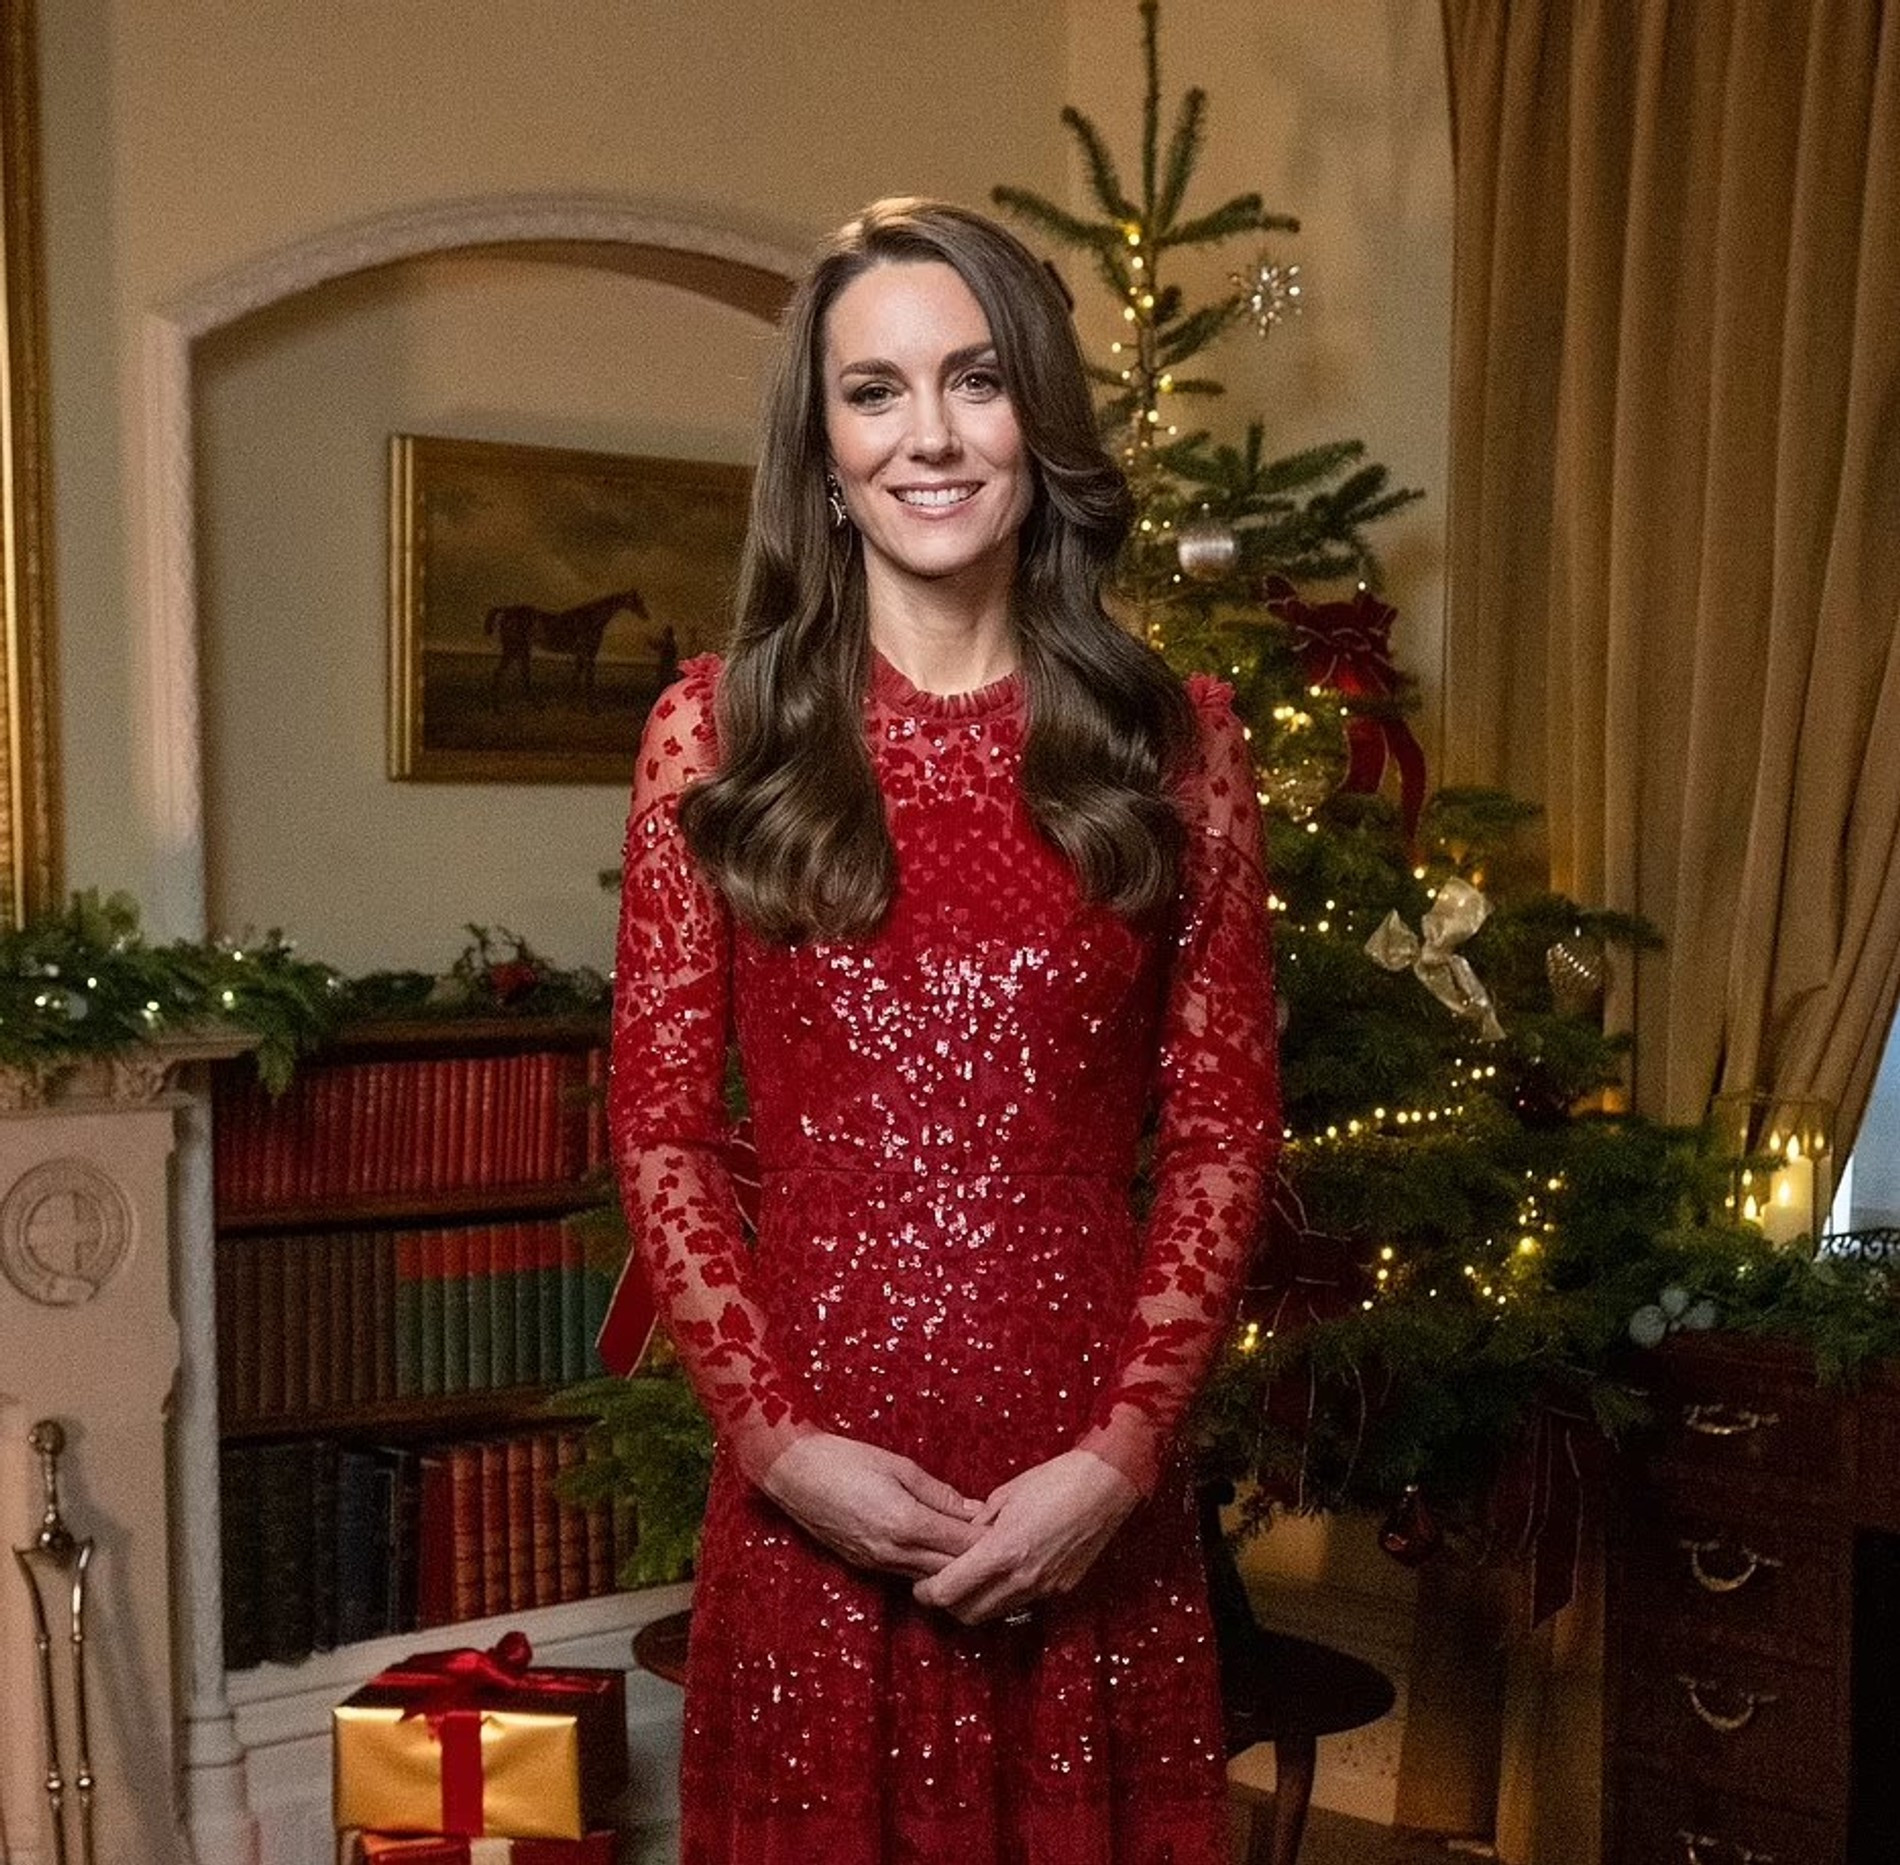 Кейт Миддлтон в рождественском промо в платье за 460 фунтов
Фото: Getty